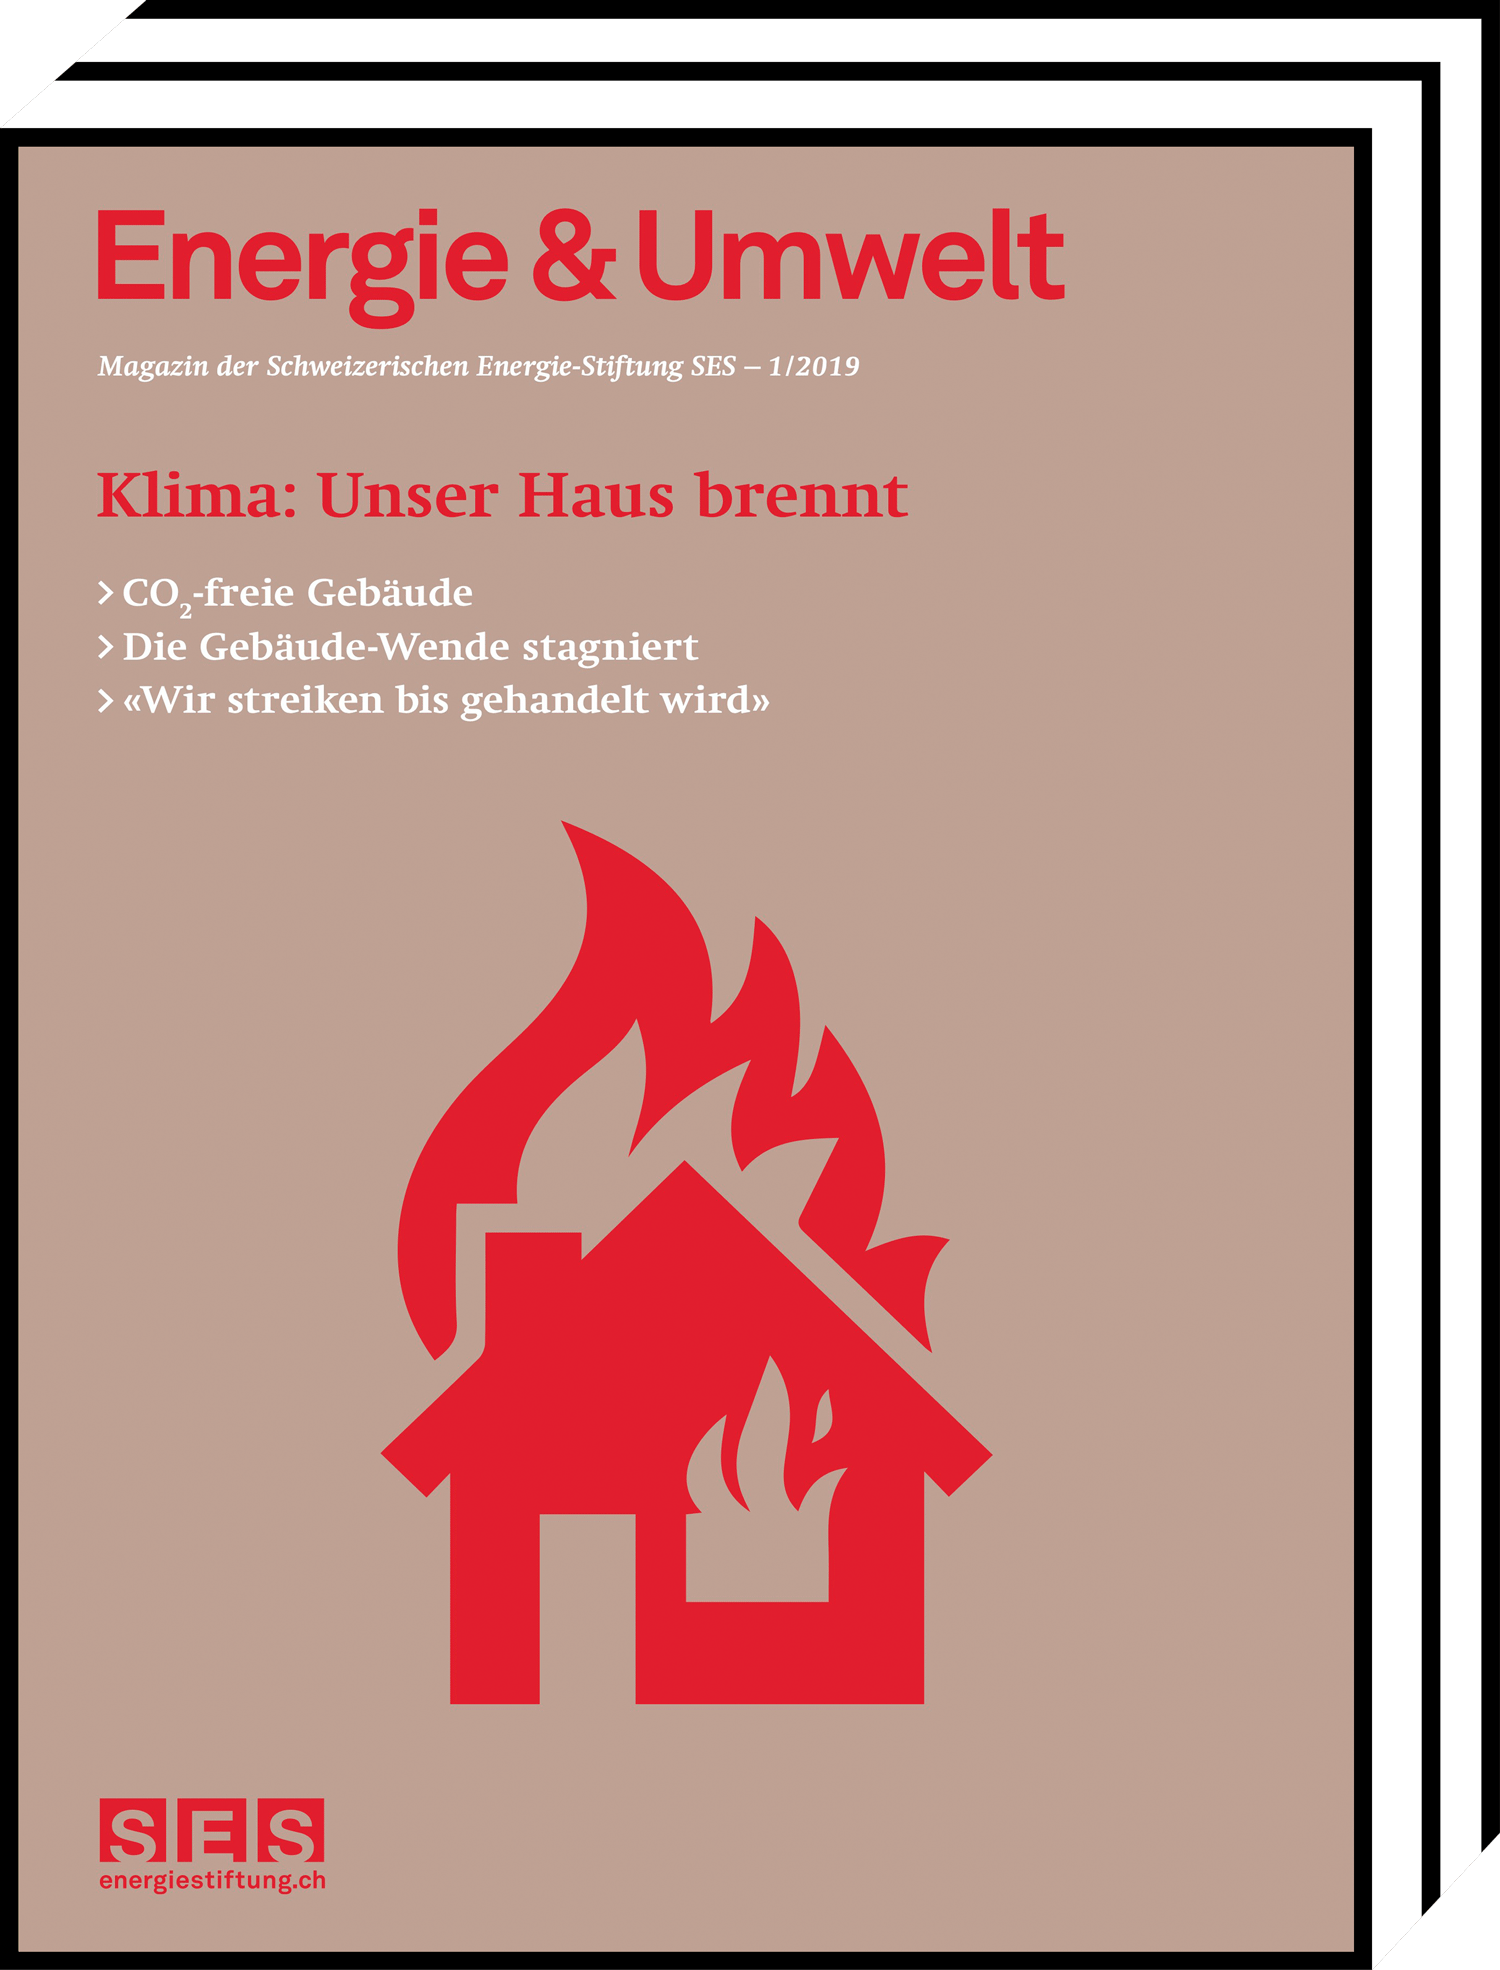 Energie&Umwelt - Klima - Unser Haus brennt